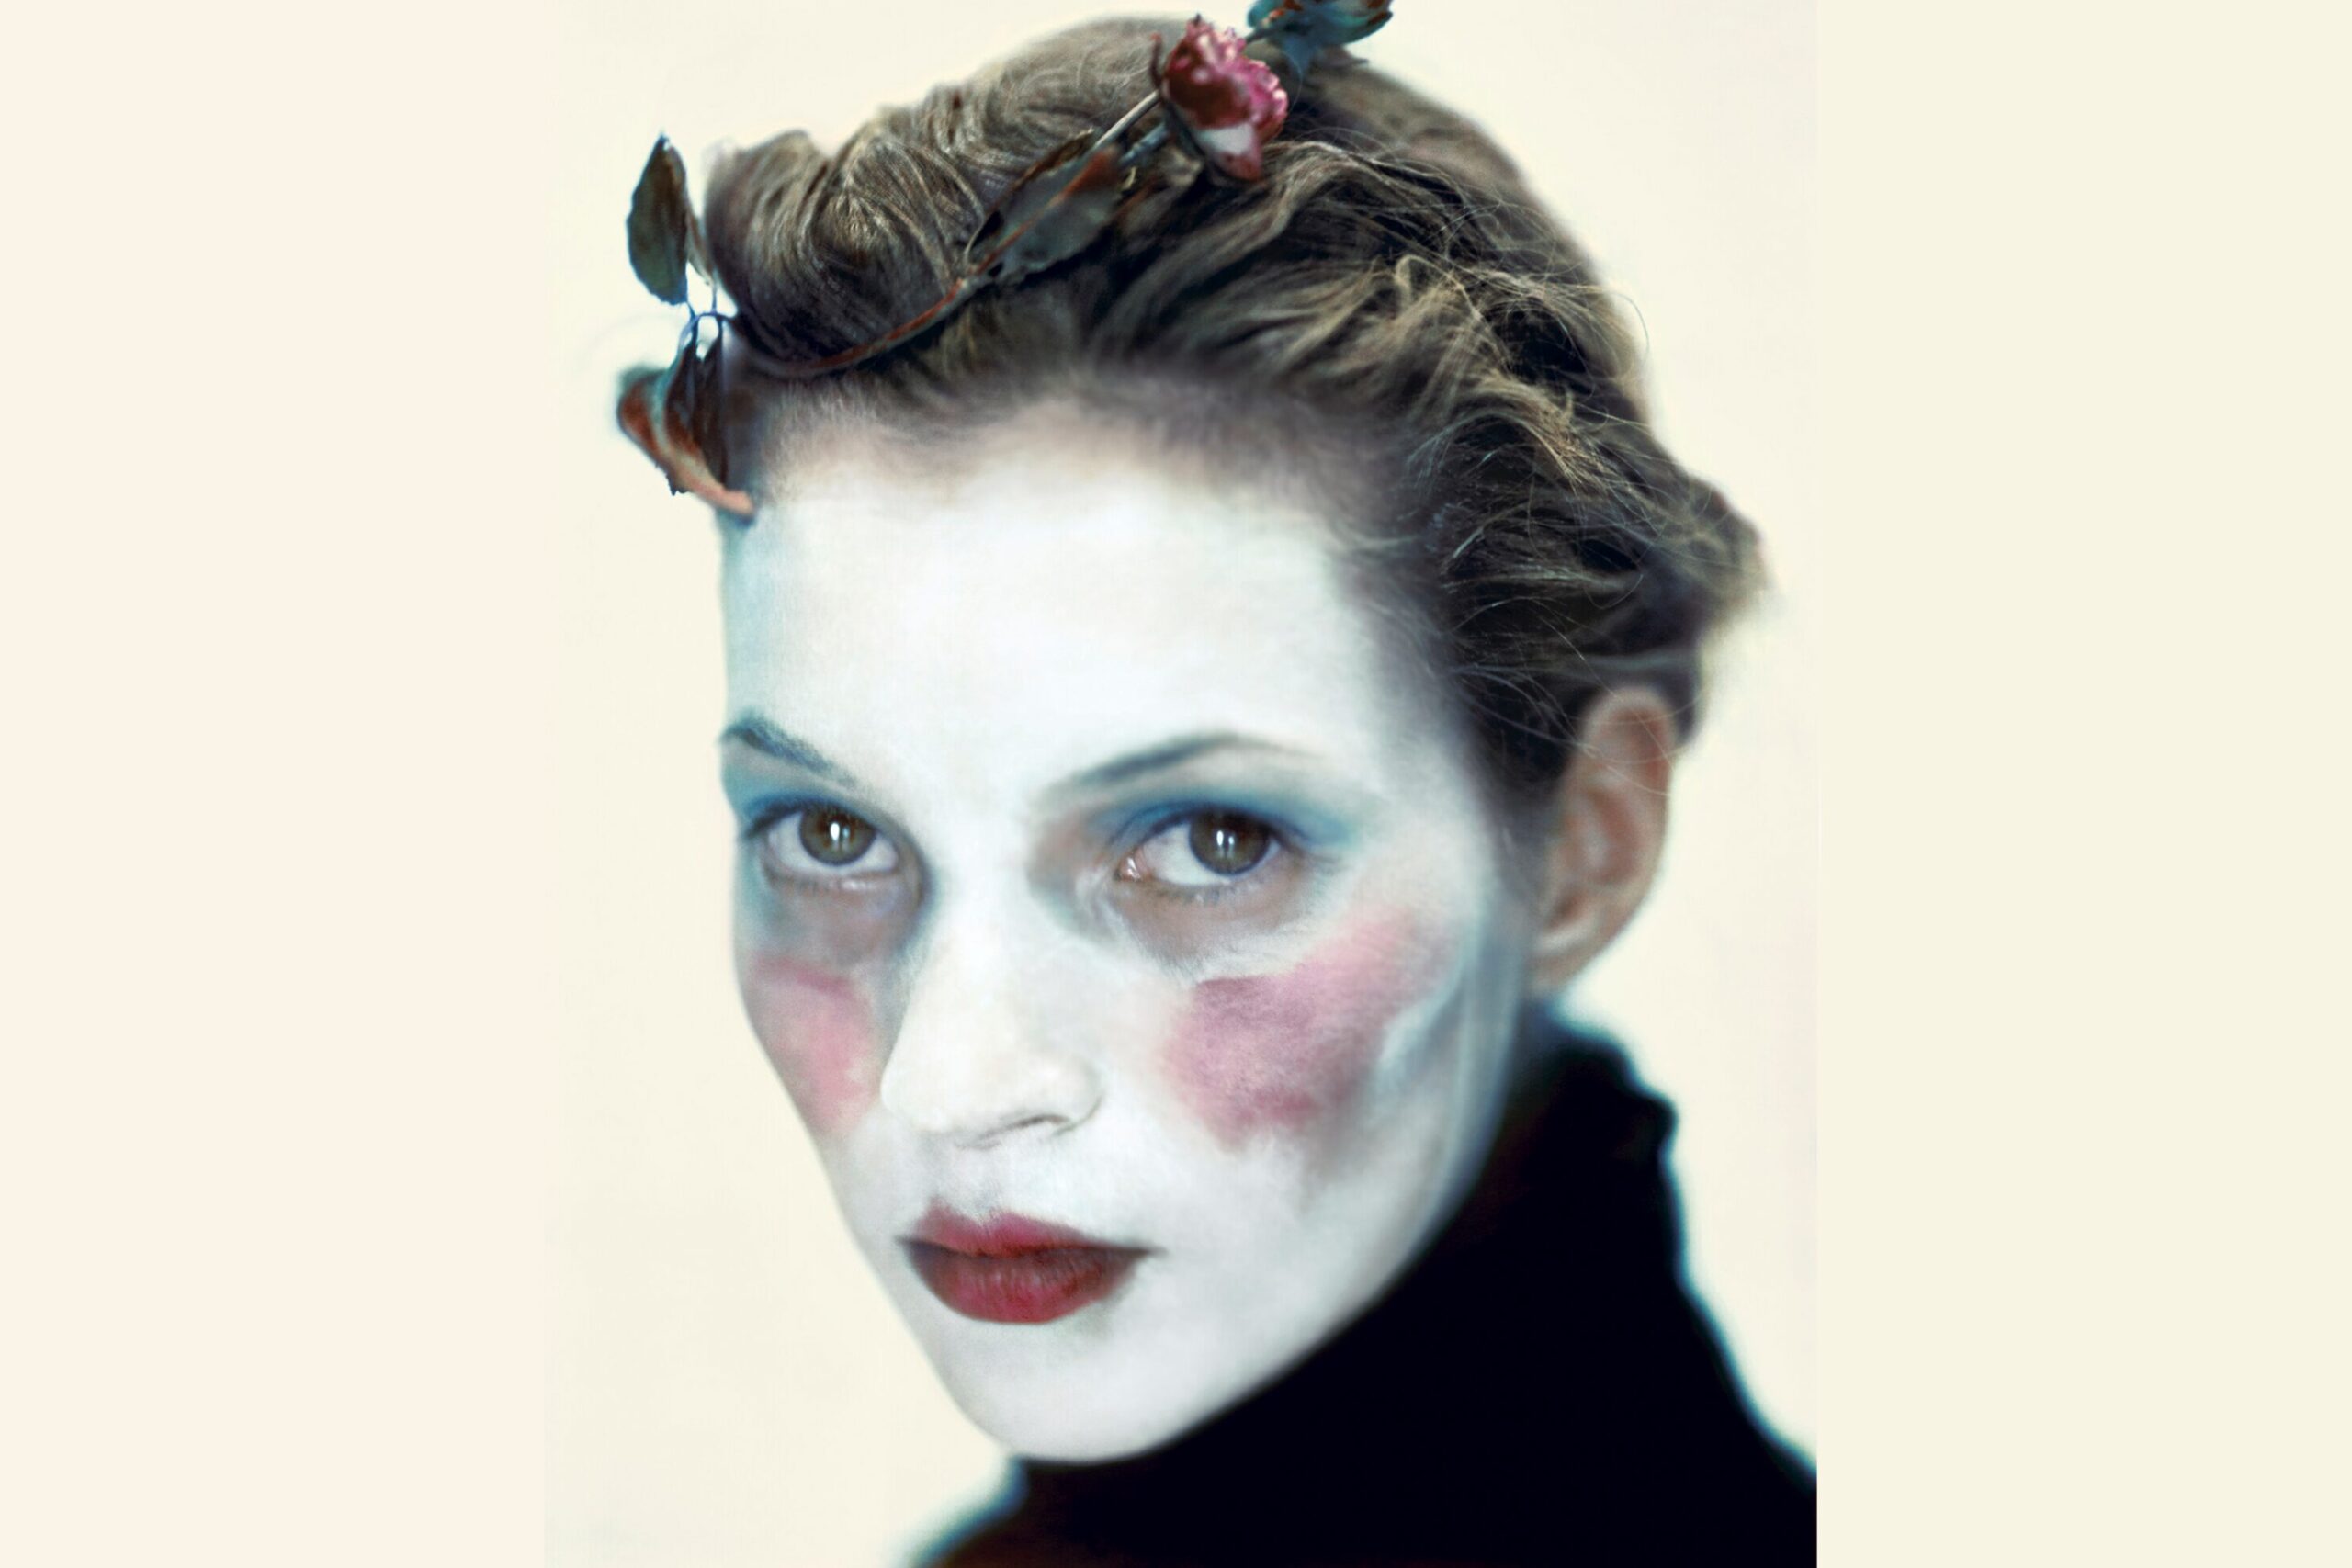 Masquerade, Make-up & Ensor – adults